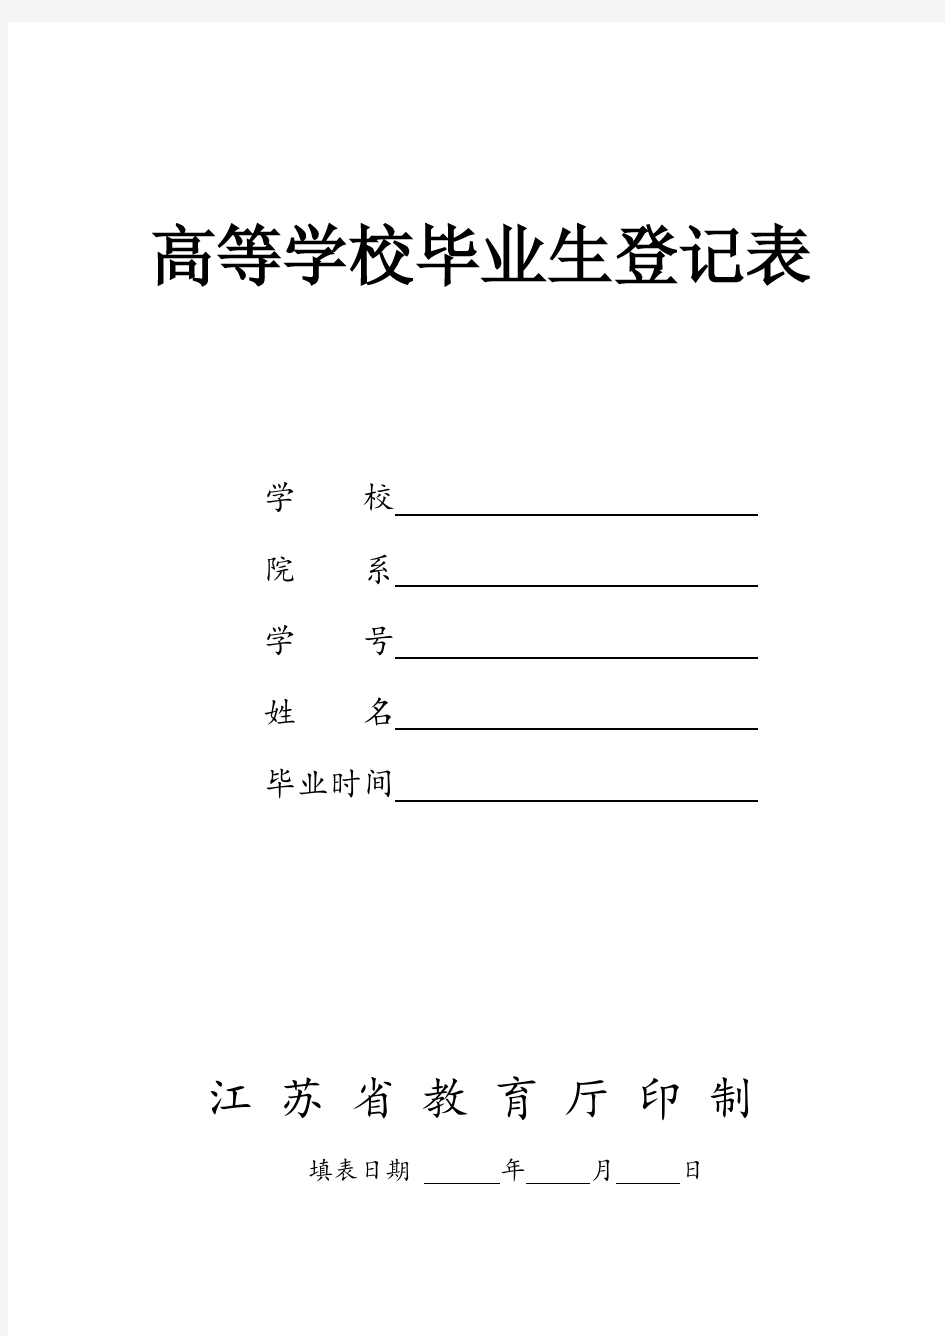 高等学校毕业生登记表(江苏省教育厅印制--pdf版本)